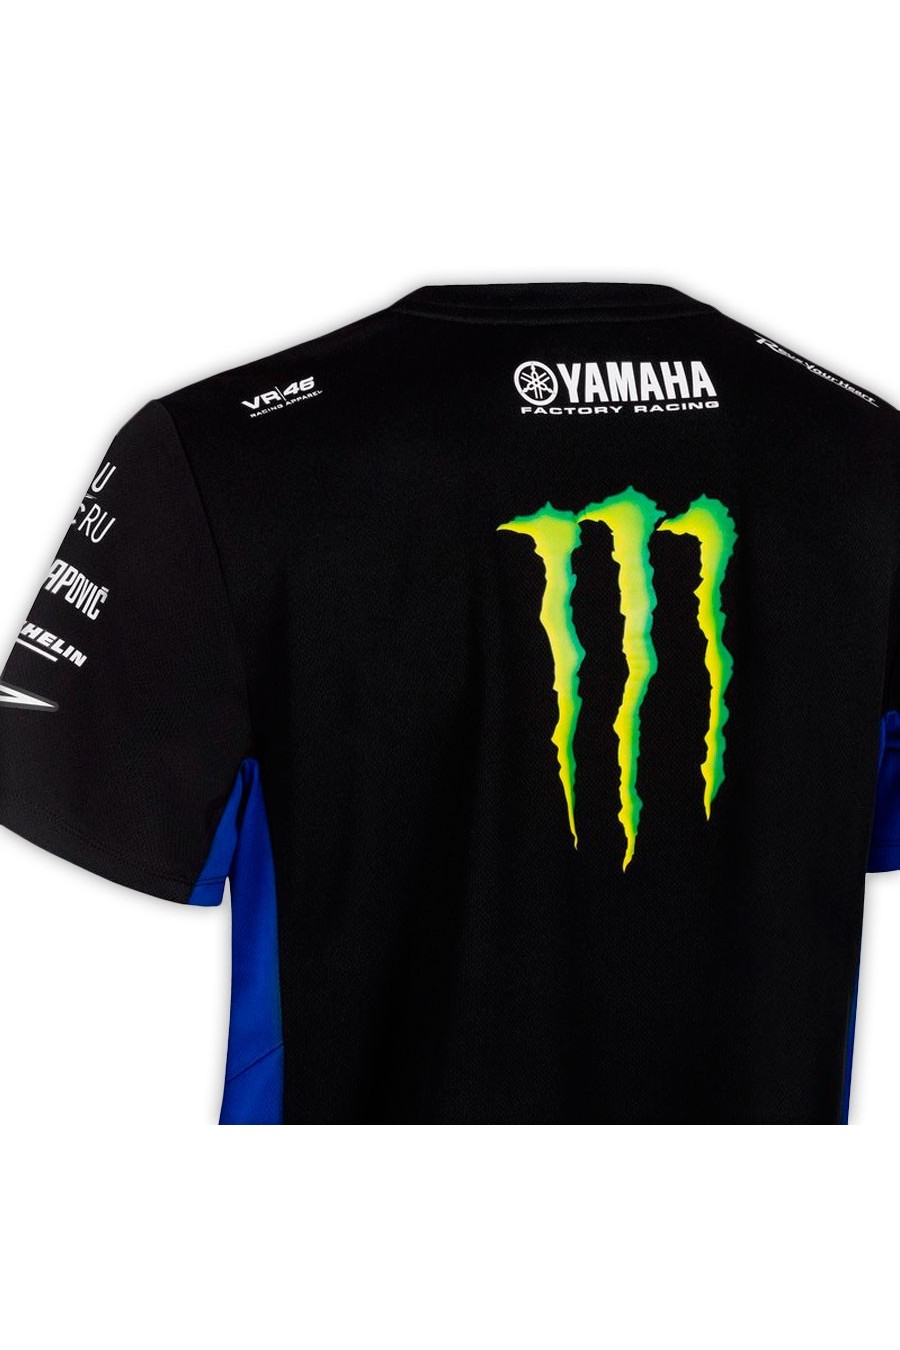 Maglietta del Team Monster Yamaha MotoGP